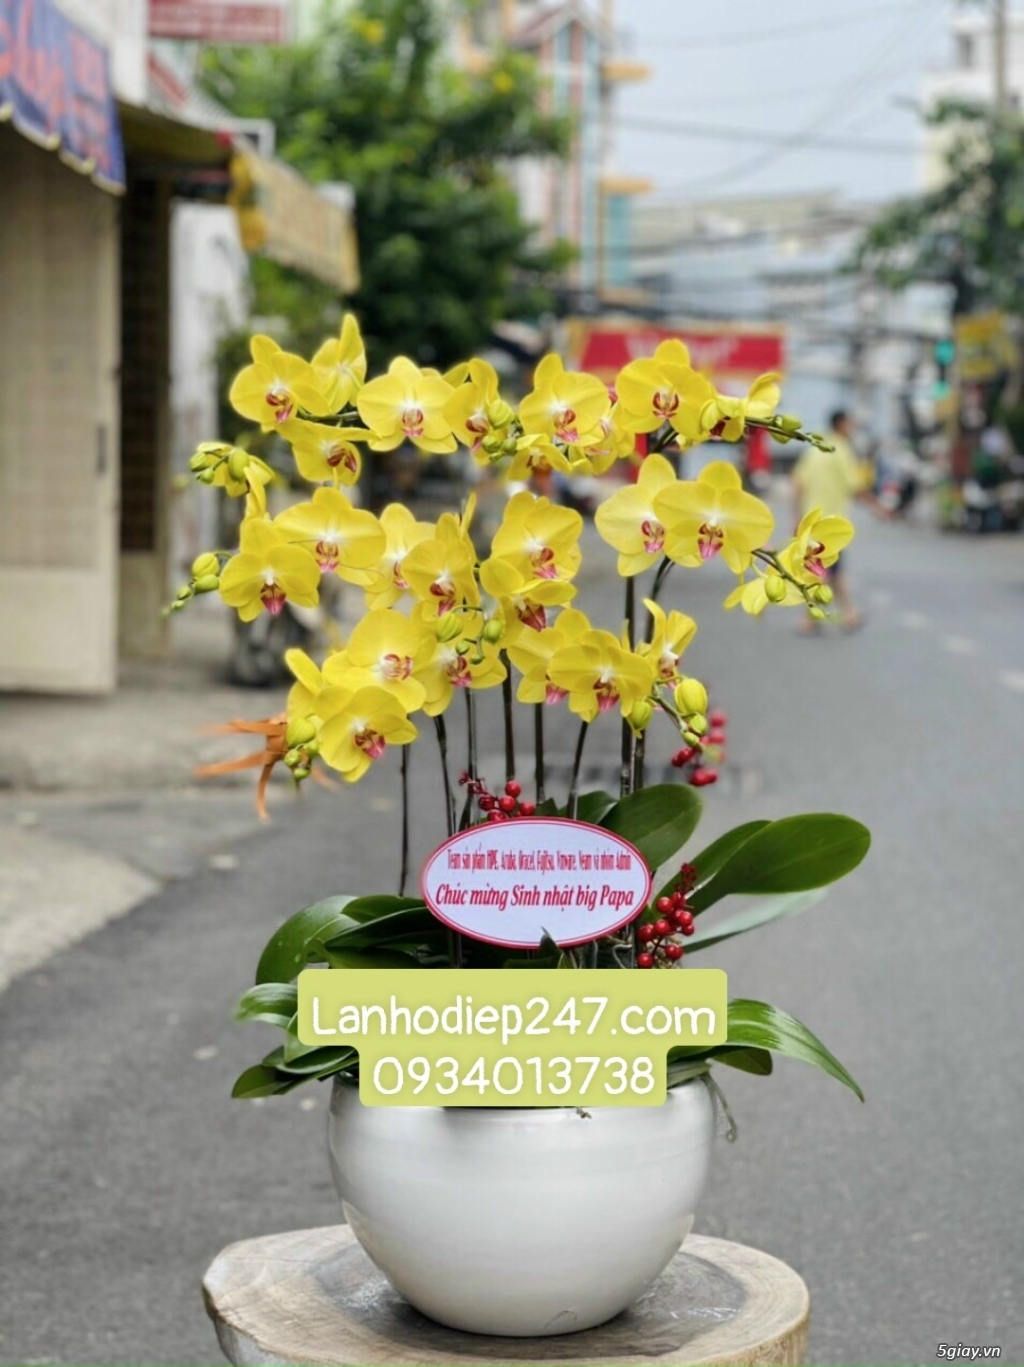 Những mẫu Lan Hồ Điệp đẹp bán chạy nhất tại Hoa lan Sài Gòn 247 - 13